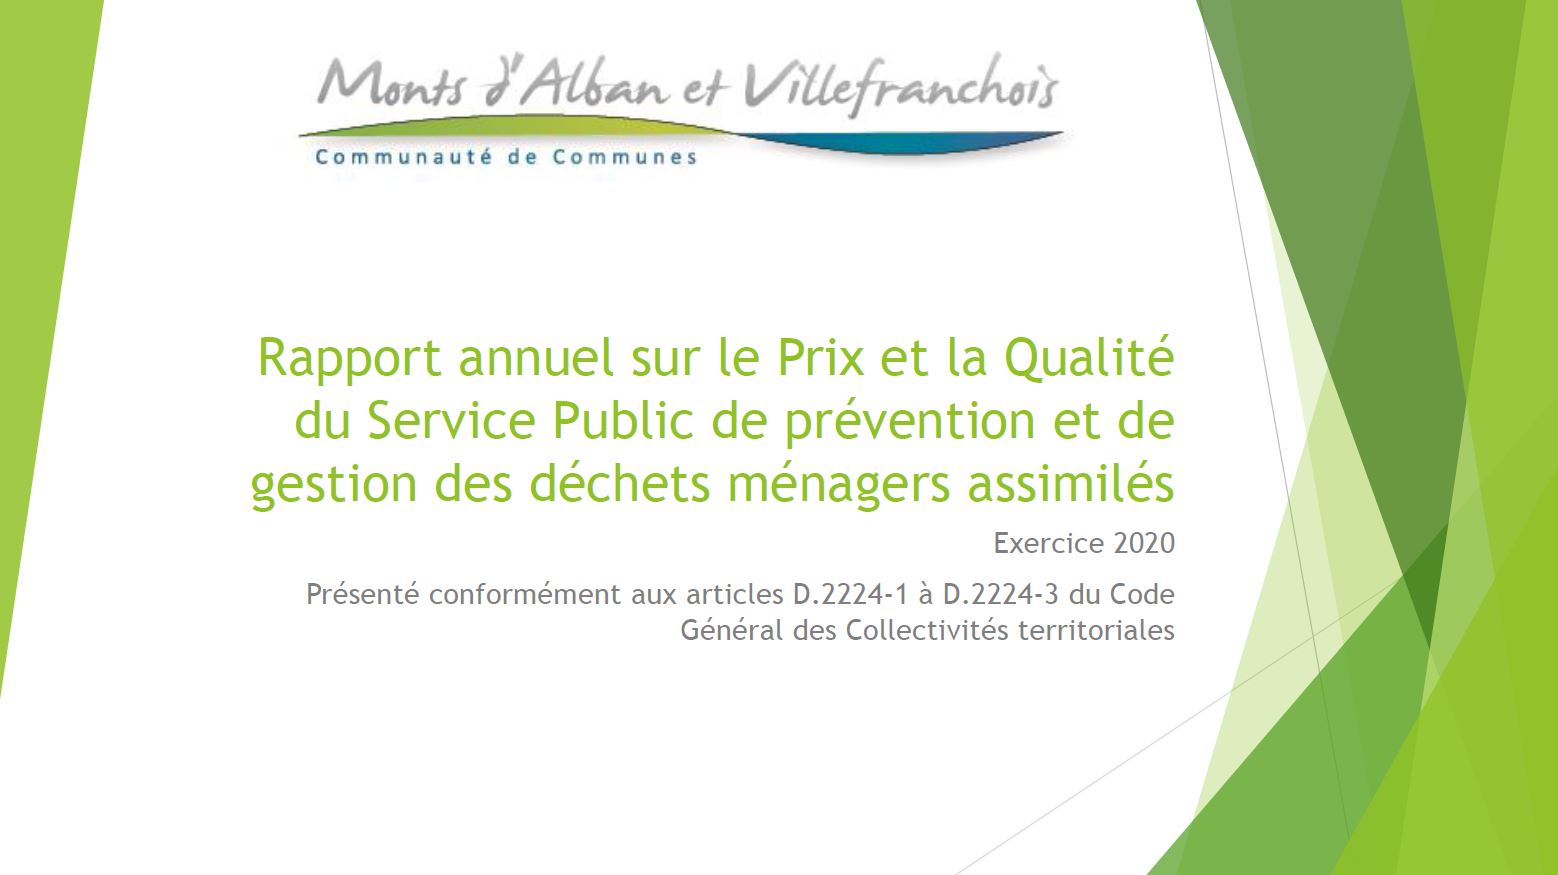 Le rapport annuel sur le prix et la qualité du service public de prévention et de gestion des déchets ménagers adopté par le Conseil communautaire